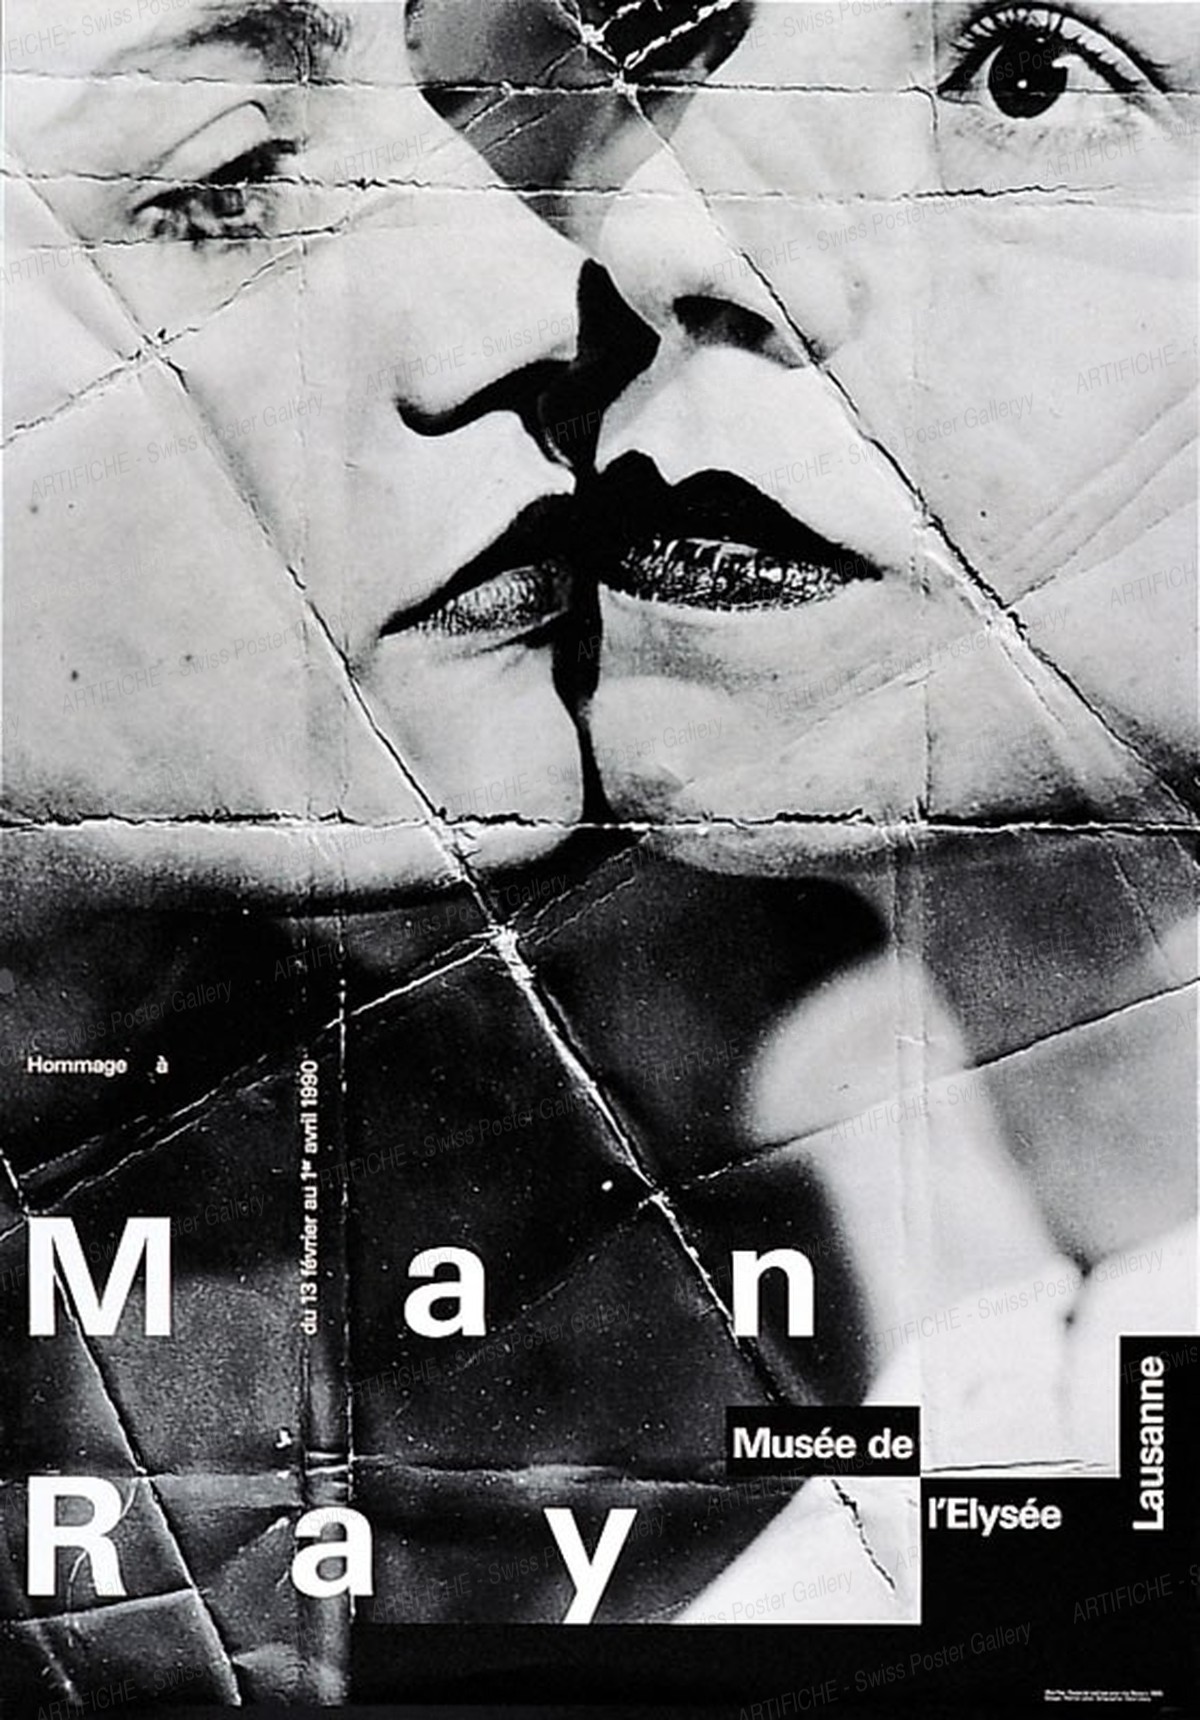 Elysee Museum Lausanne – Man Ray, Werner Jeker